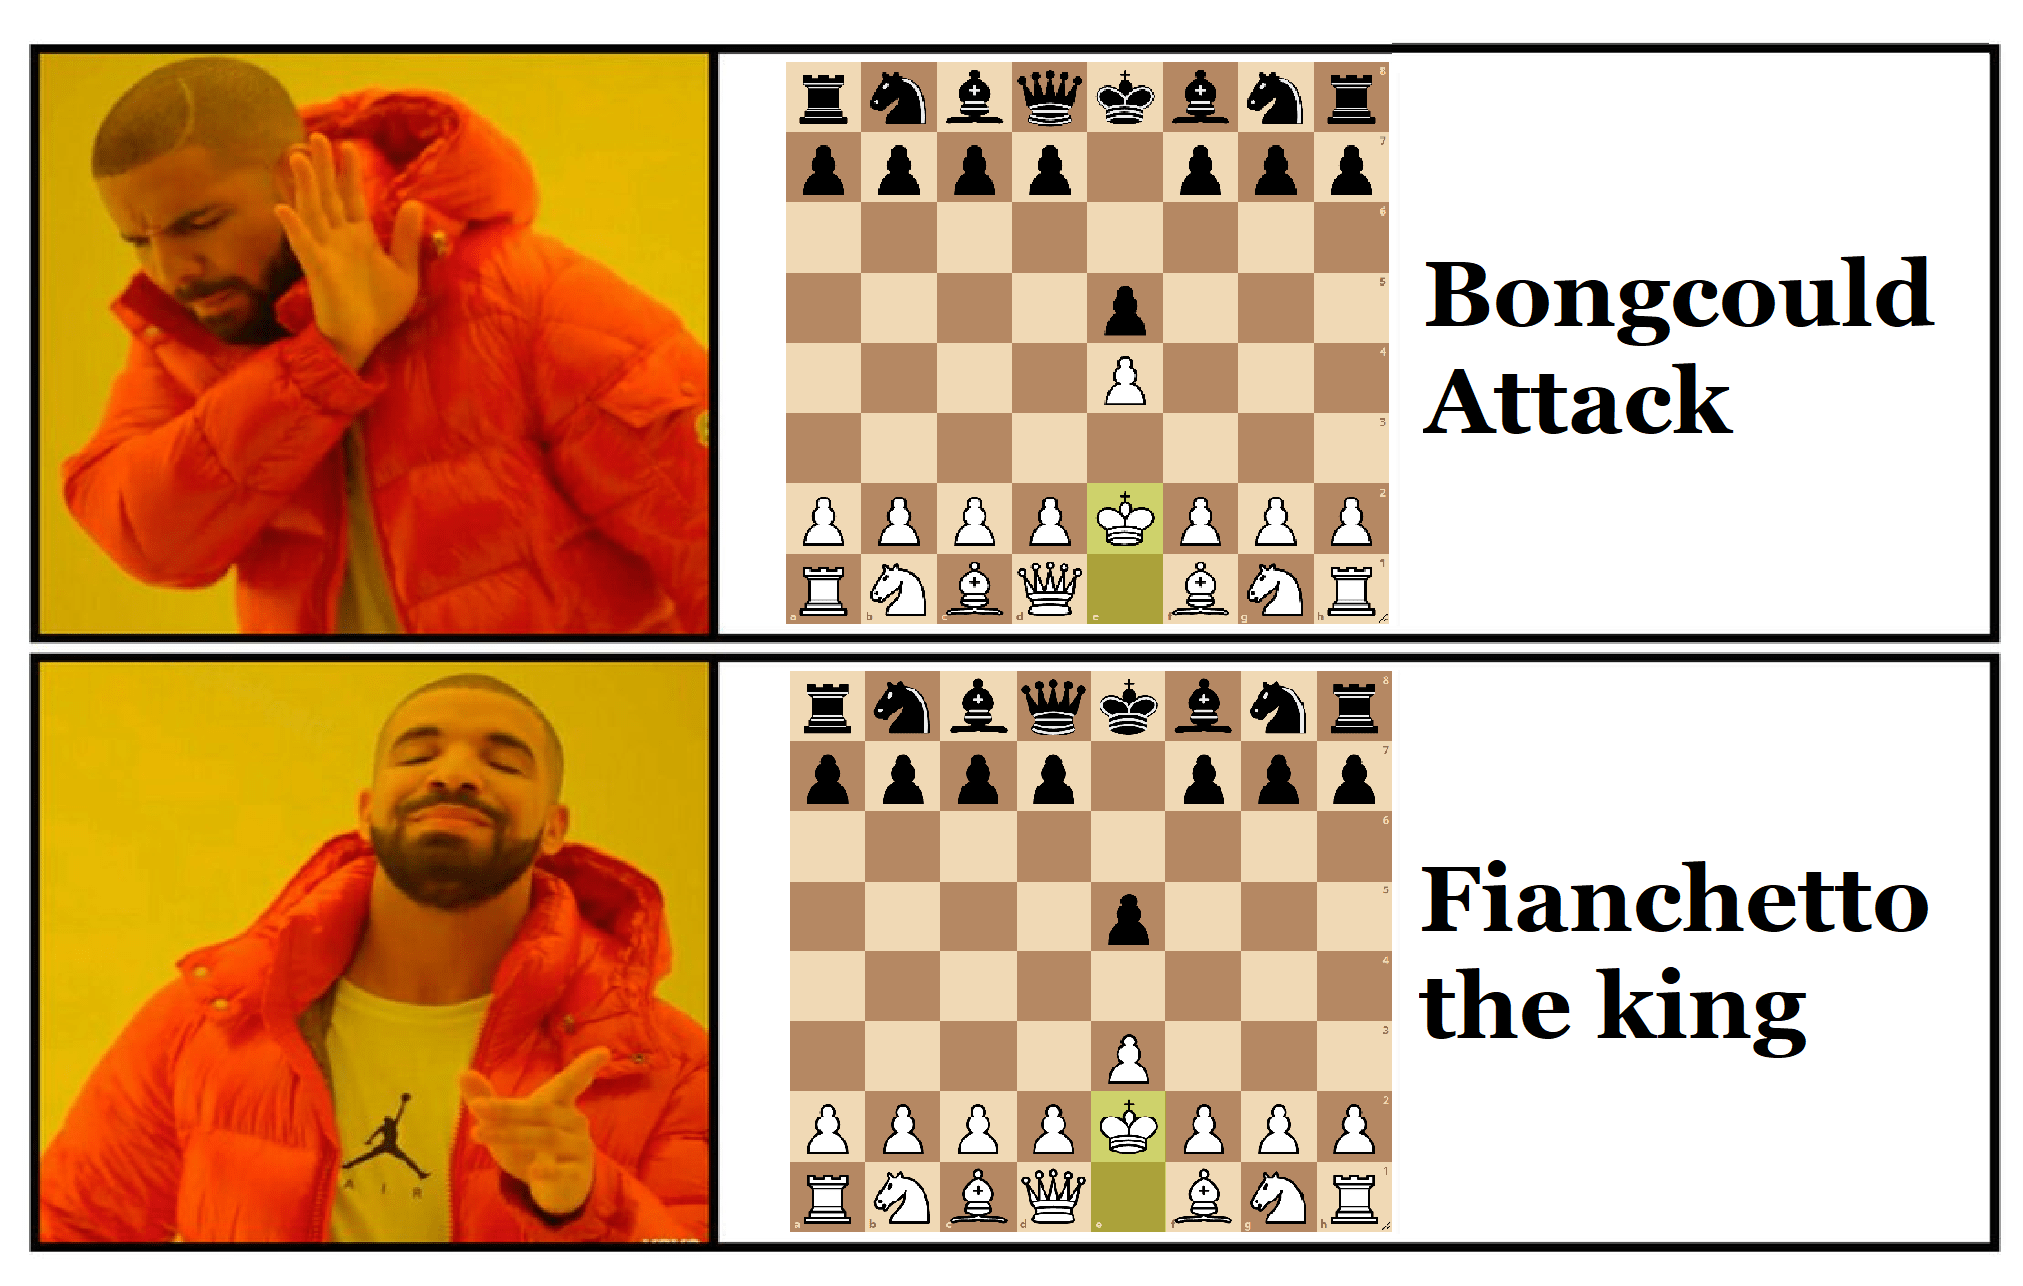 images.chesscomfiles.com image